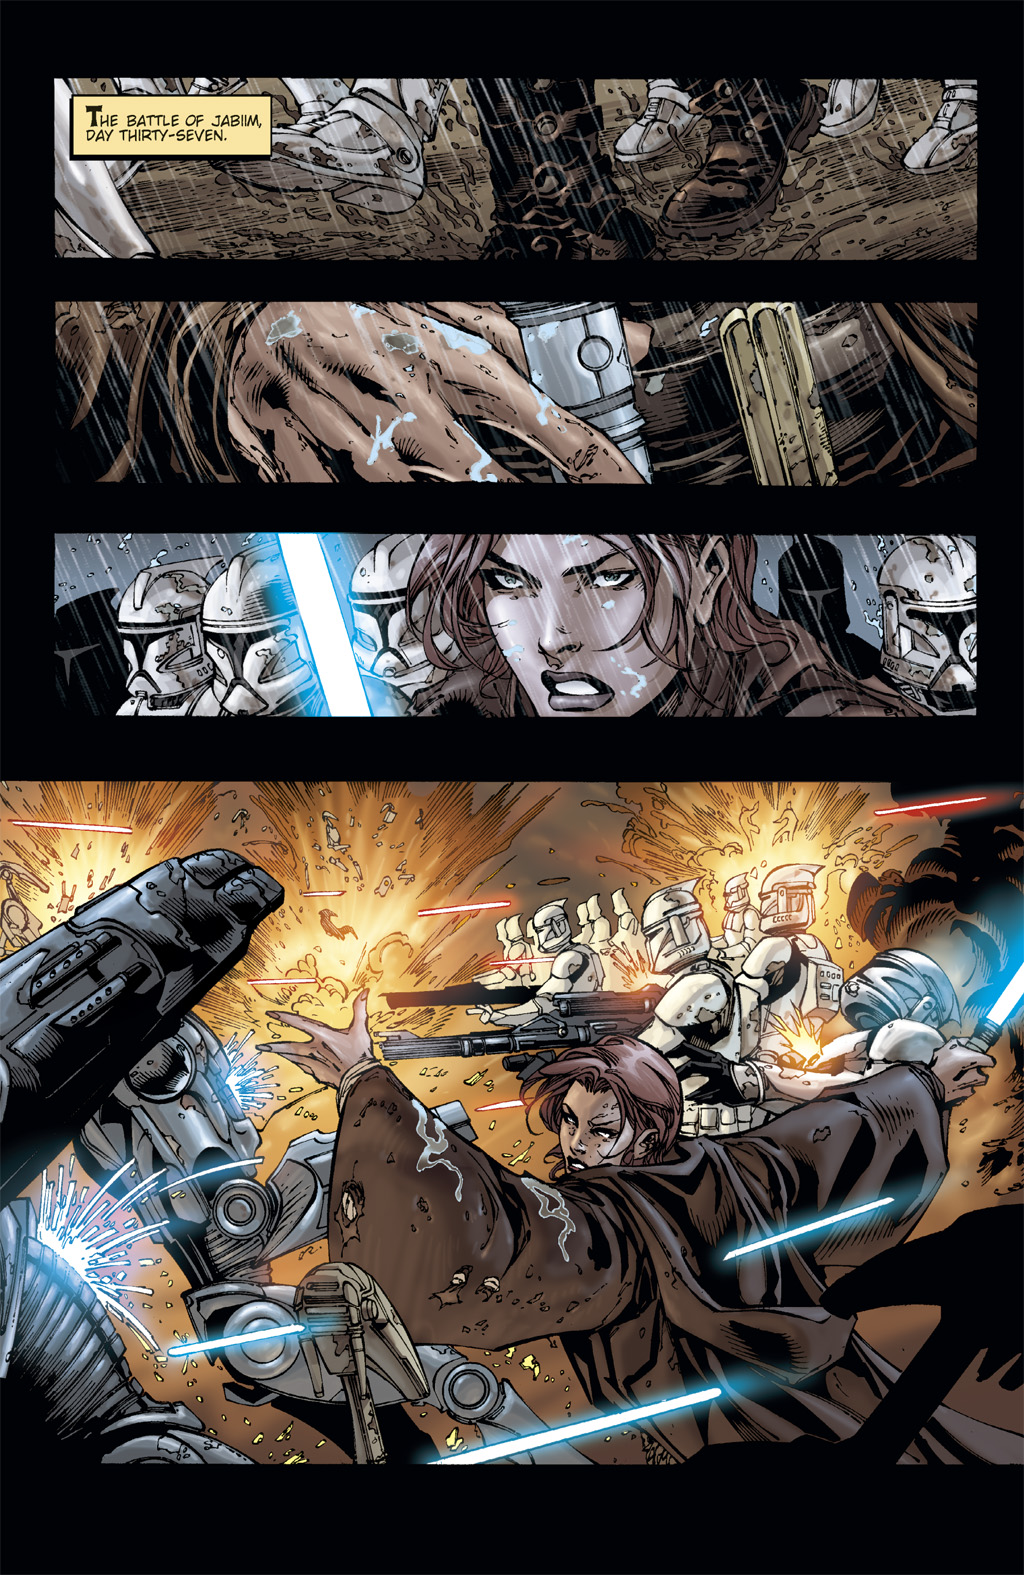 Read online Star Wars: Clone Wars comic -  Issue # TPB 3 - 52